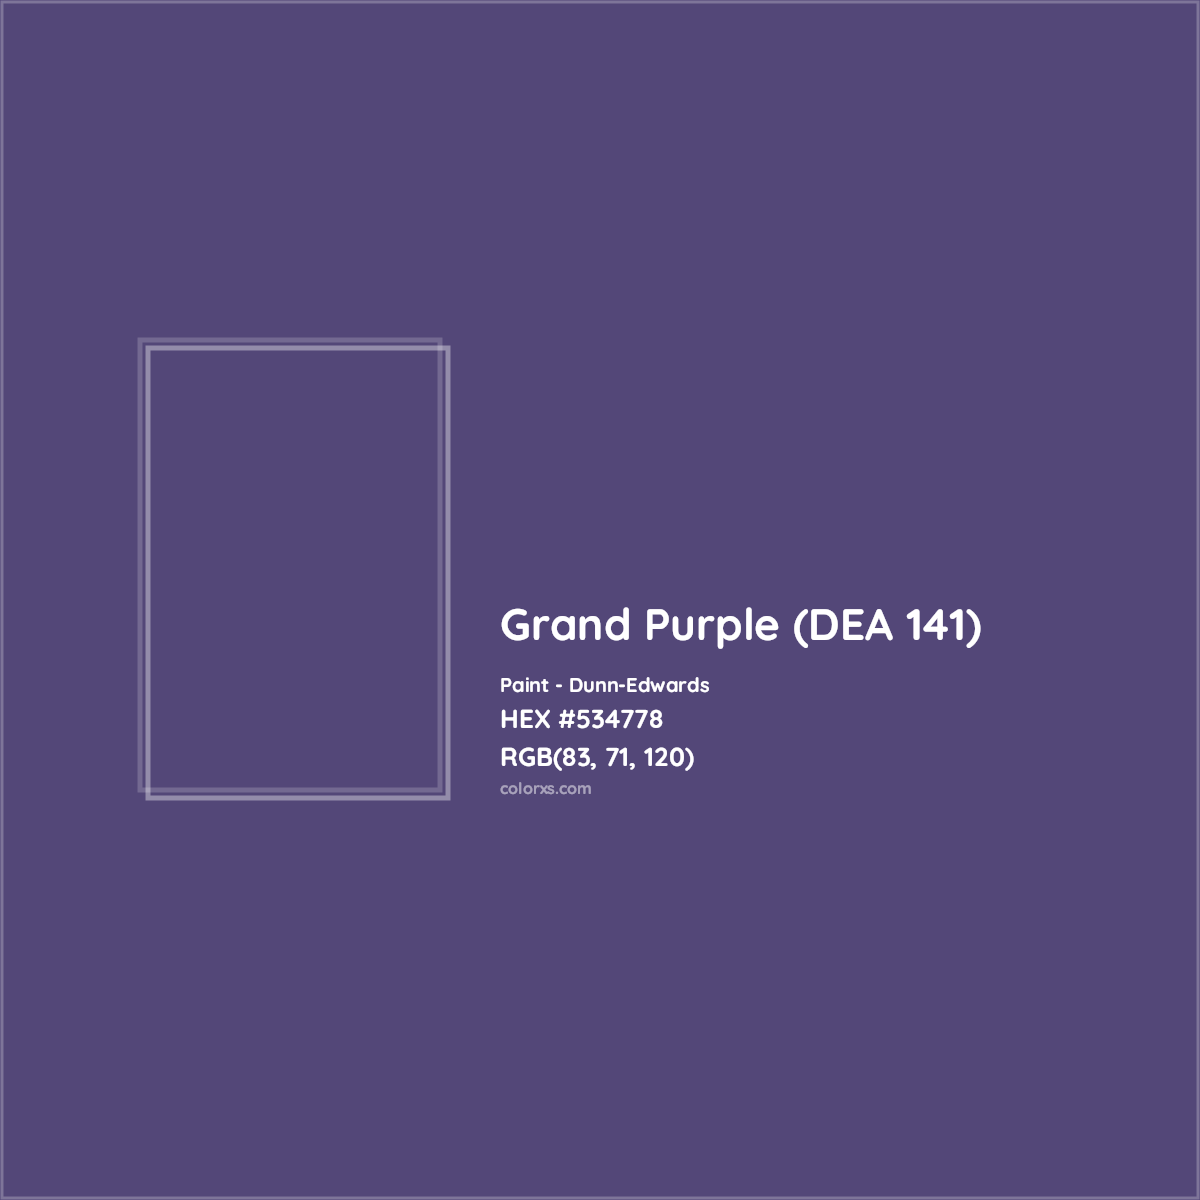 HEX #534778 Grand Purple (DEA 141) Paint Dunn-Edwards - Color Code